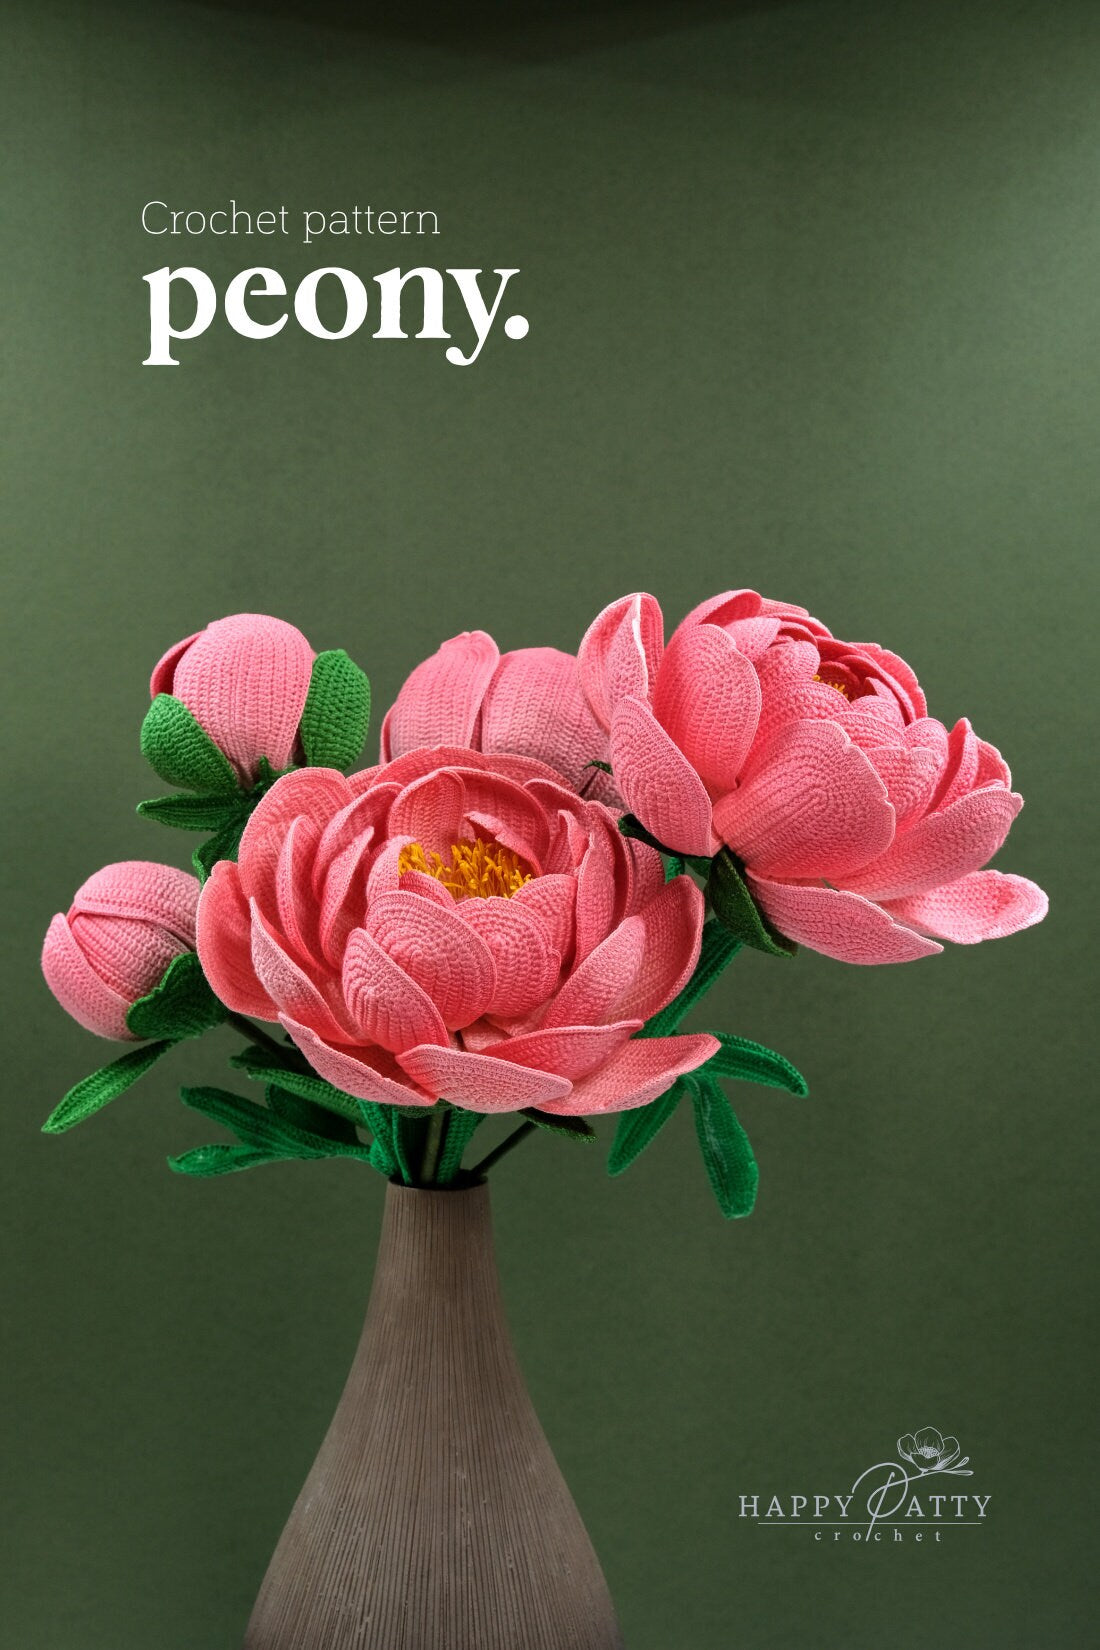 Crochet Peony Pattern - Crochet Flower Pattern for a Peony Flower